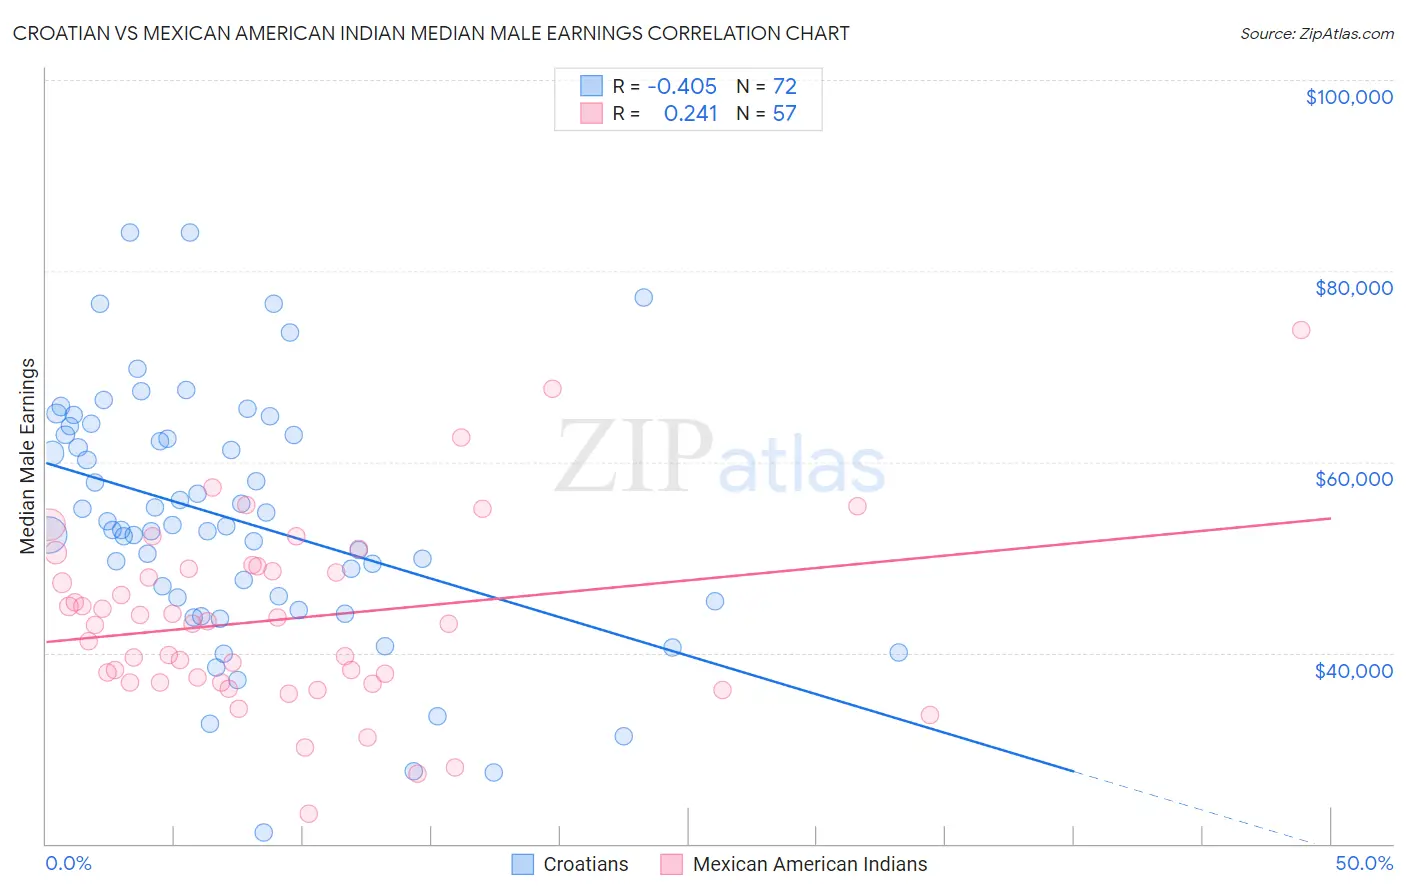 Croatian vs Mexican American Indian Median Male Earnings